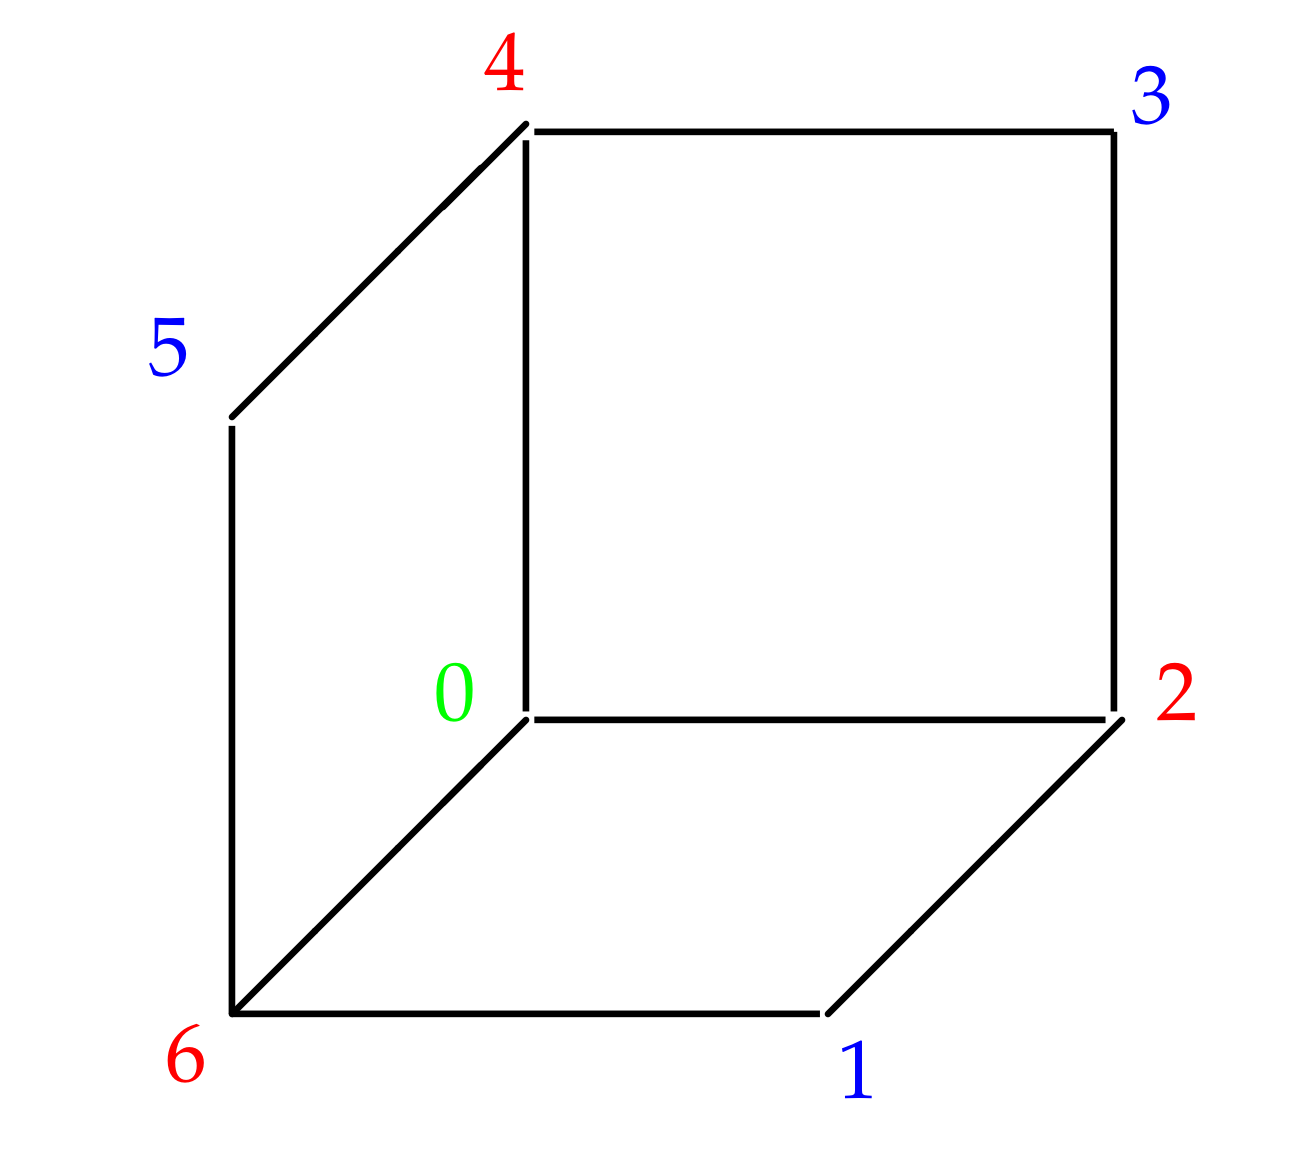 Đối xứng: Đối xứng là một trong những khái niệm cơ bản nhất của toán học, được áp dụng rộng rãi trong hình học và đại số. Hãy xem những ảnh về đối xứng và tìm hiểu thêm về khái niệm này để phát triển tư duy logic và khả năng giải quyết các bài toán.